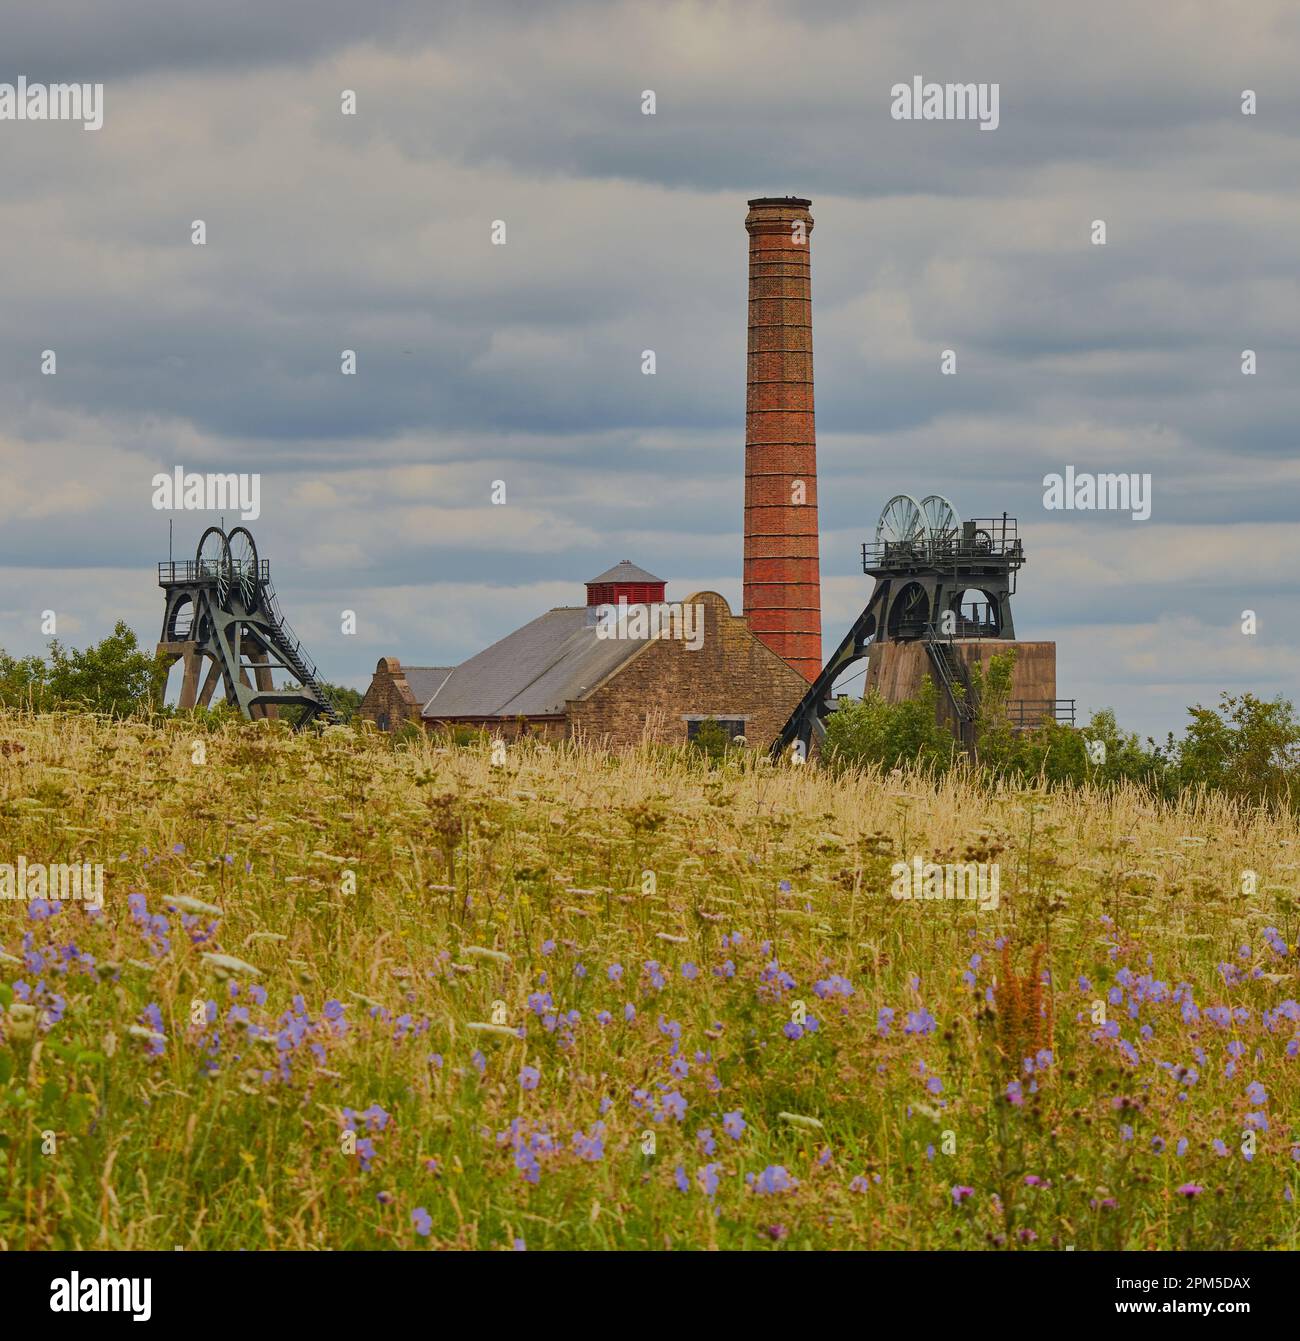 vieille mine de charbon au loin, avec un champ plein de fleurs devant la mine. Banque D'Images